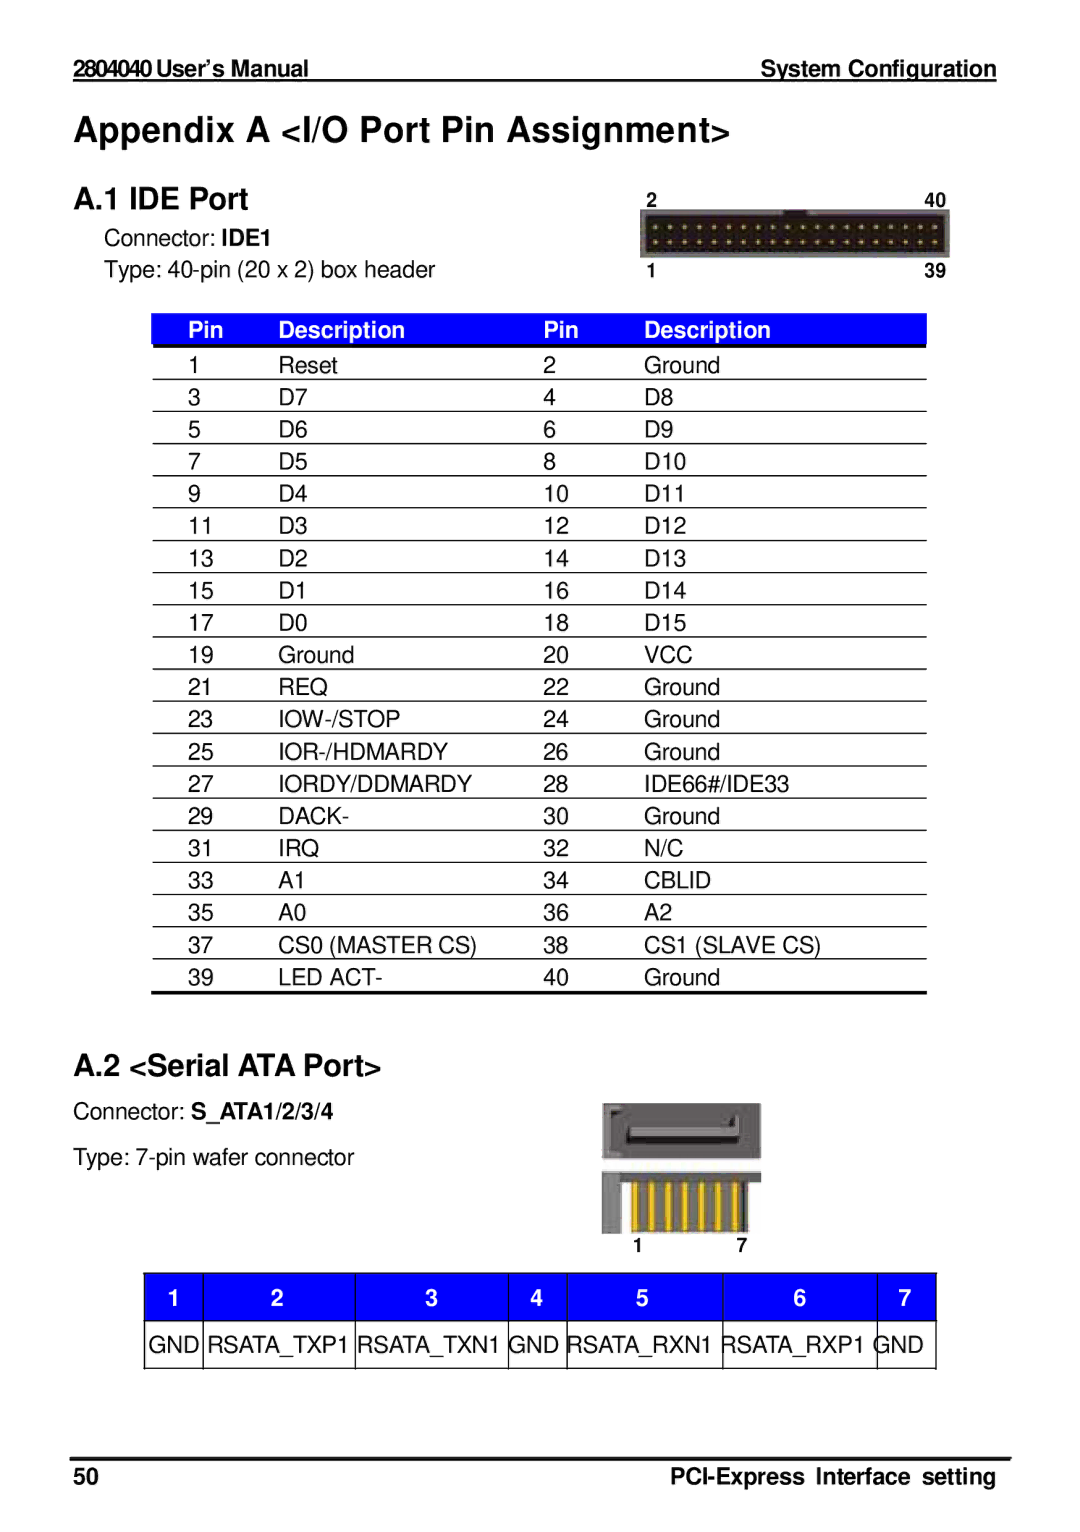 Intel 2804040 user manual Appendix a I/O Port Pin Assignment, IDE Port, Serial ATA Port, Connector SATA1/2/3/4 